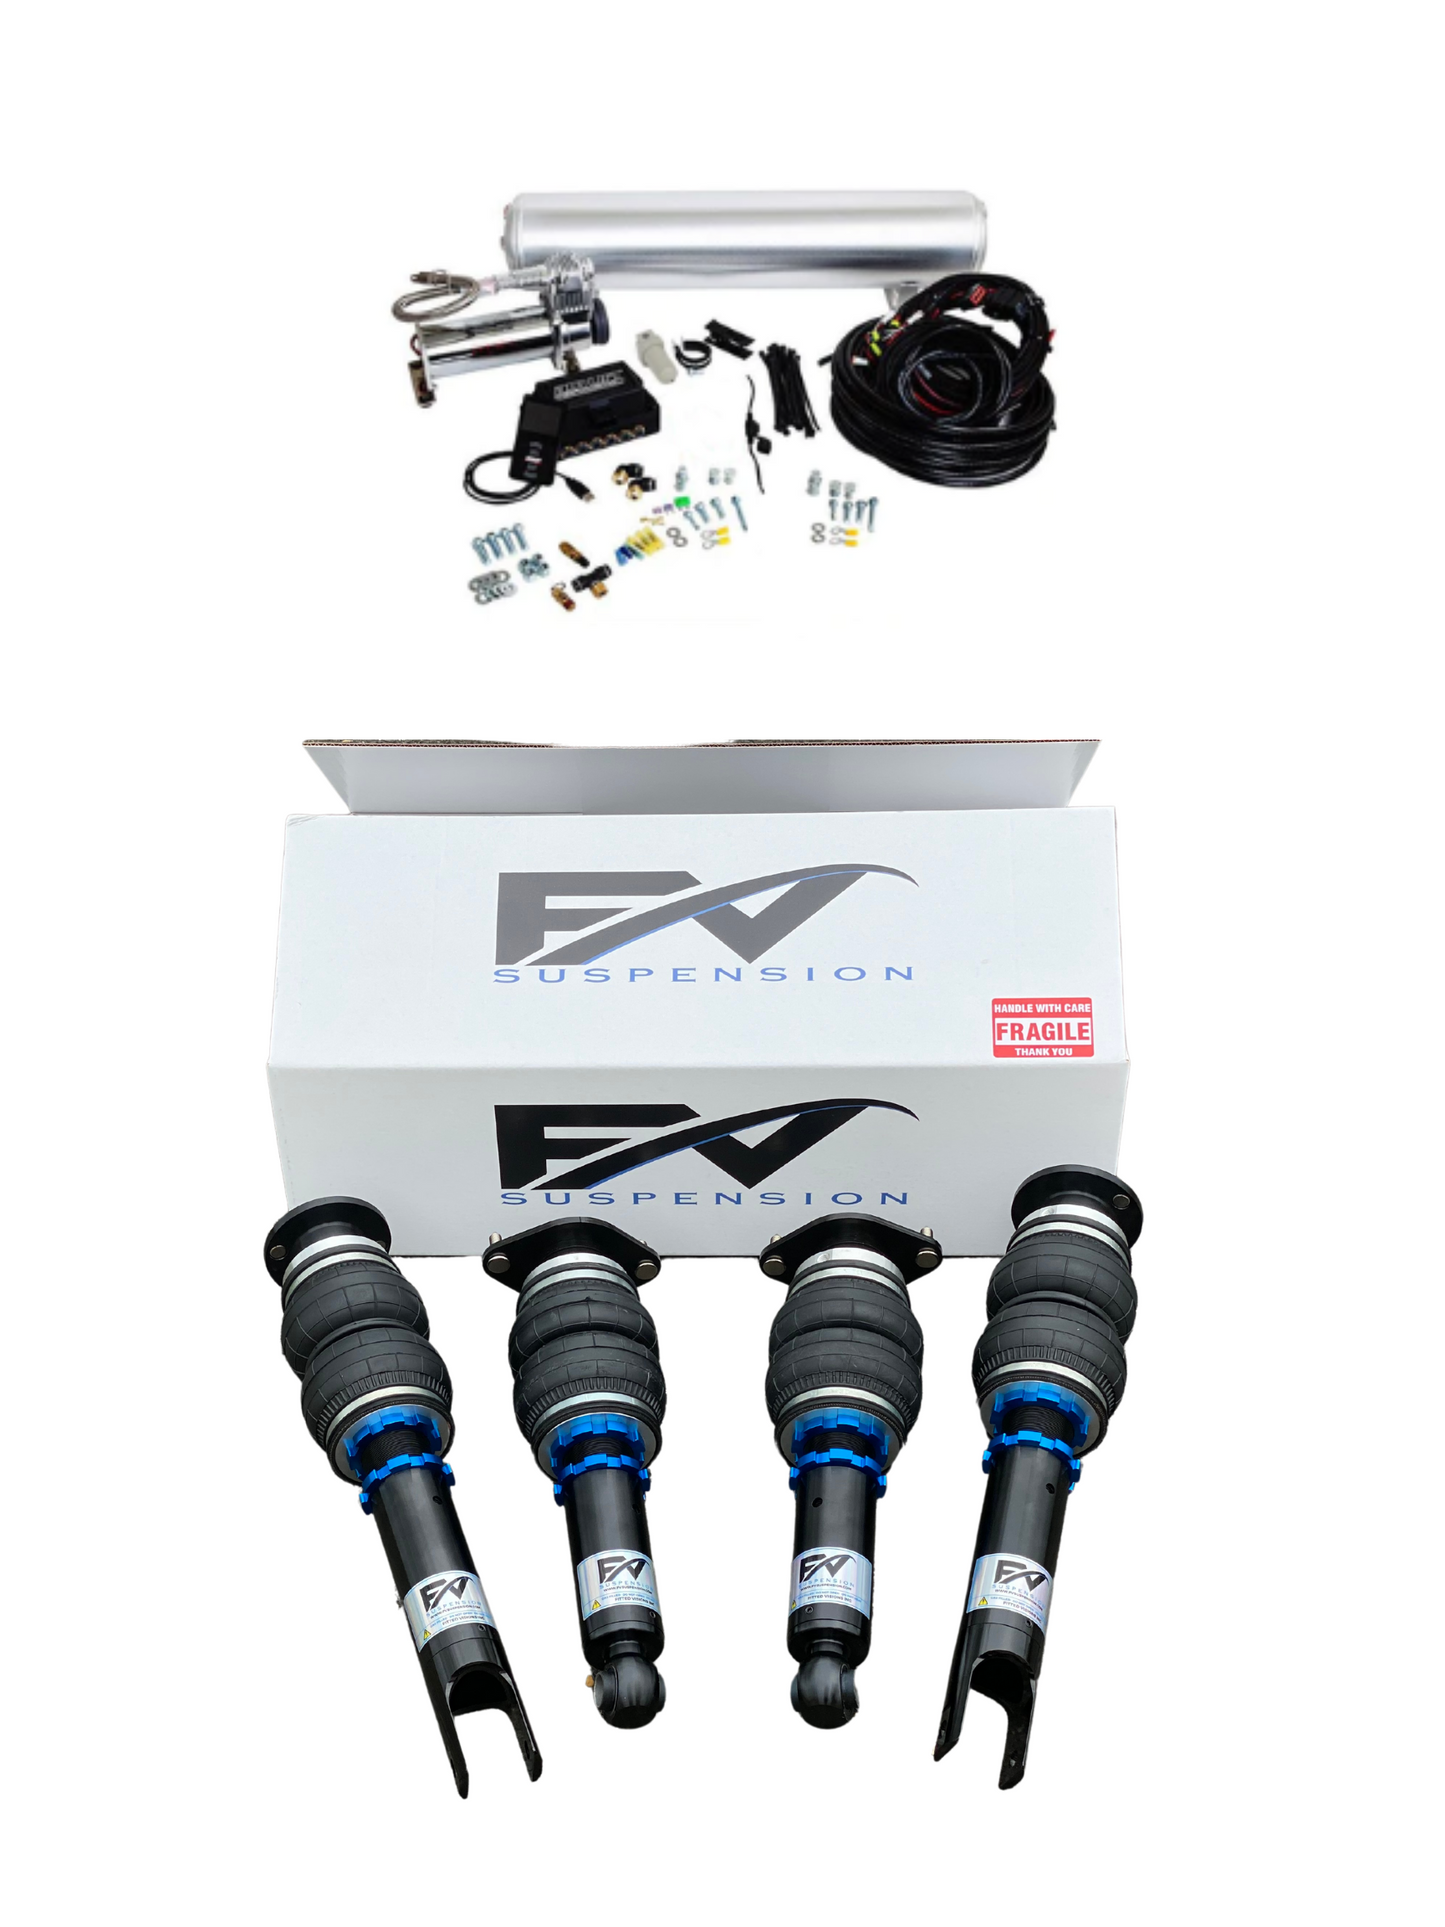 FV Suspension 3P Tier 2 Complete Air Ride kit for 10-17 Audi A7 A7/S7/RS7 Avant Quattro - FVALtier2kit61